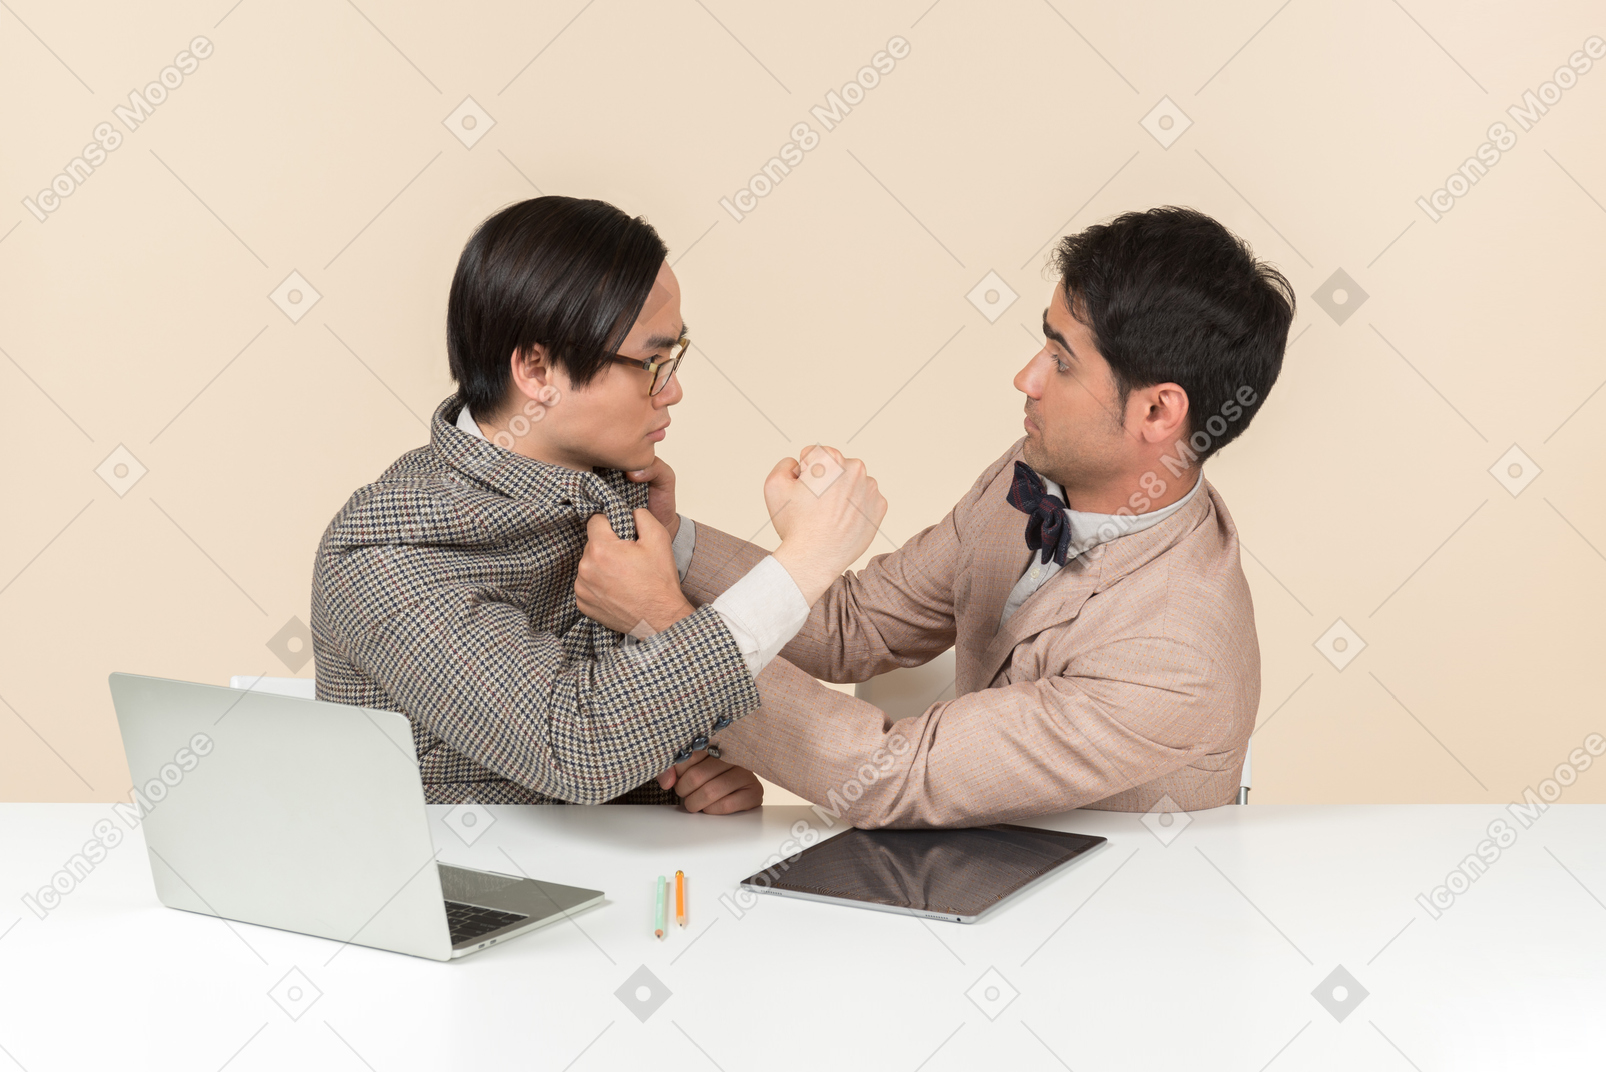 Dos jóvenes nerds sentados a la mesa y golpeándose en la cara